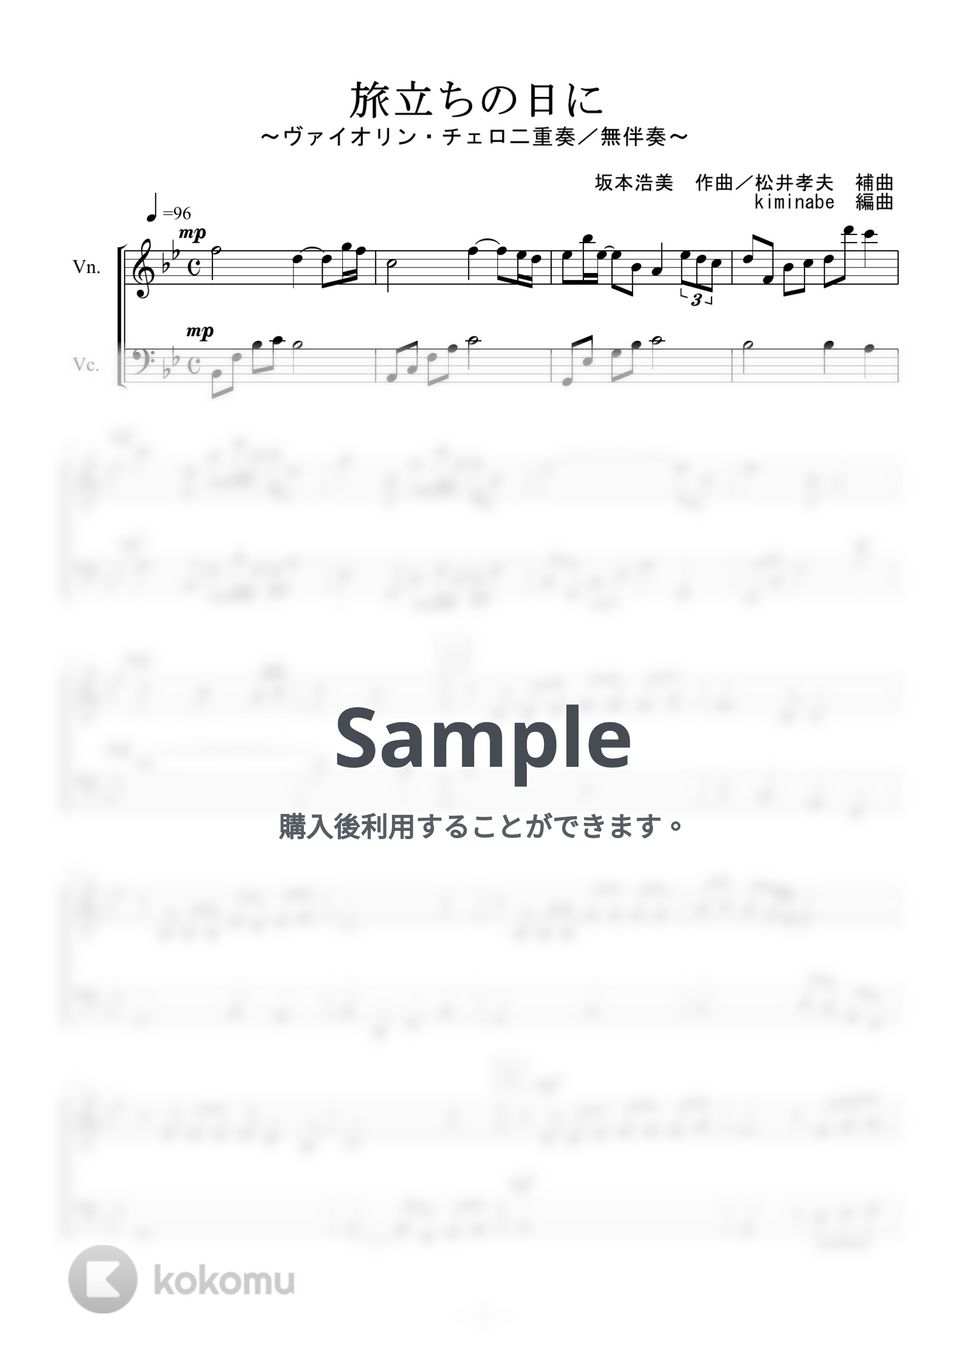 坂本浩美 - 旅立ちの日に (ヴァイオリン・チェロ二重奏／無伴奏) by kiminabe